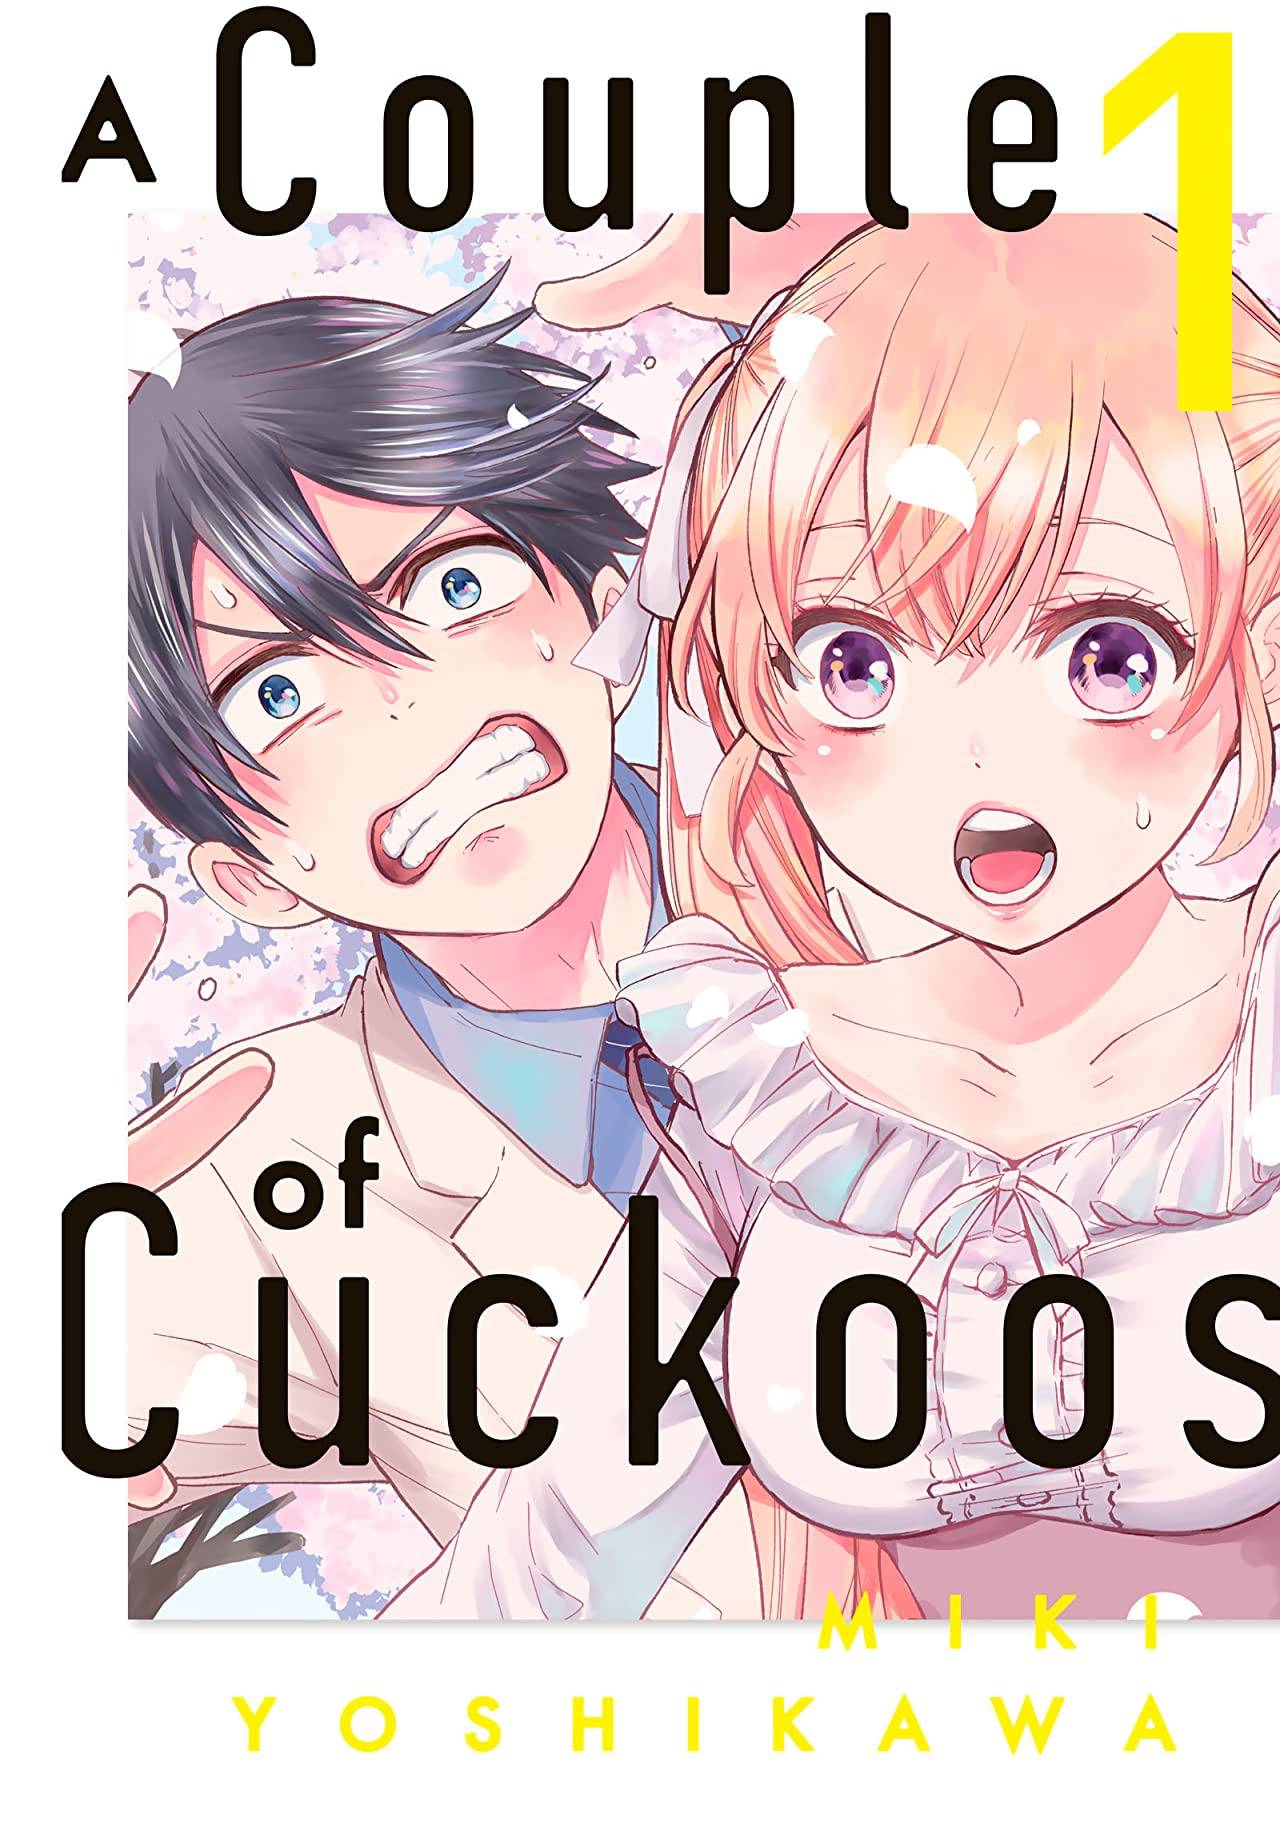 El manga A Couple of Cuckoos, tendrá su anime en el 2022 16